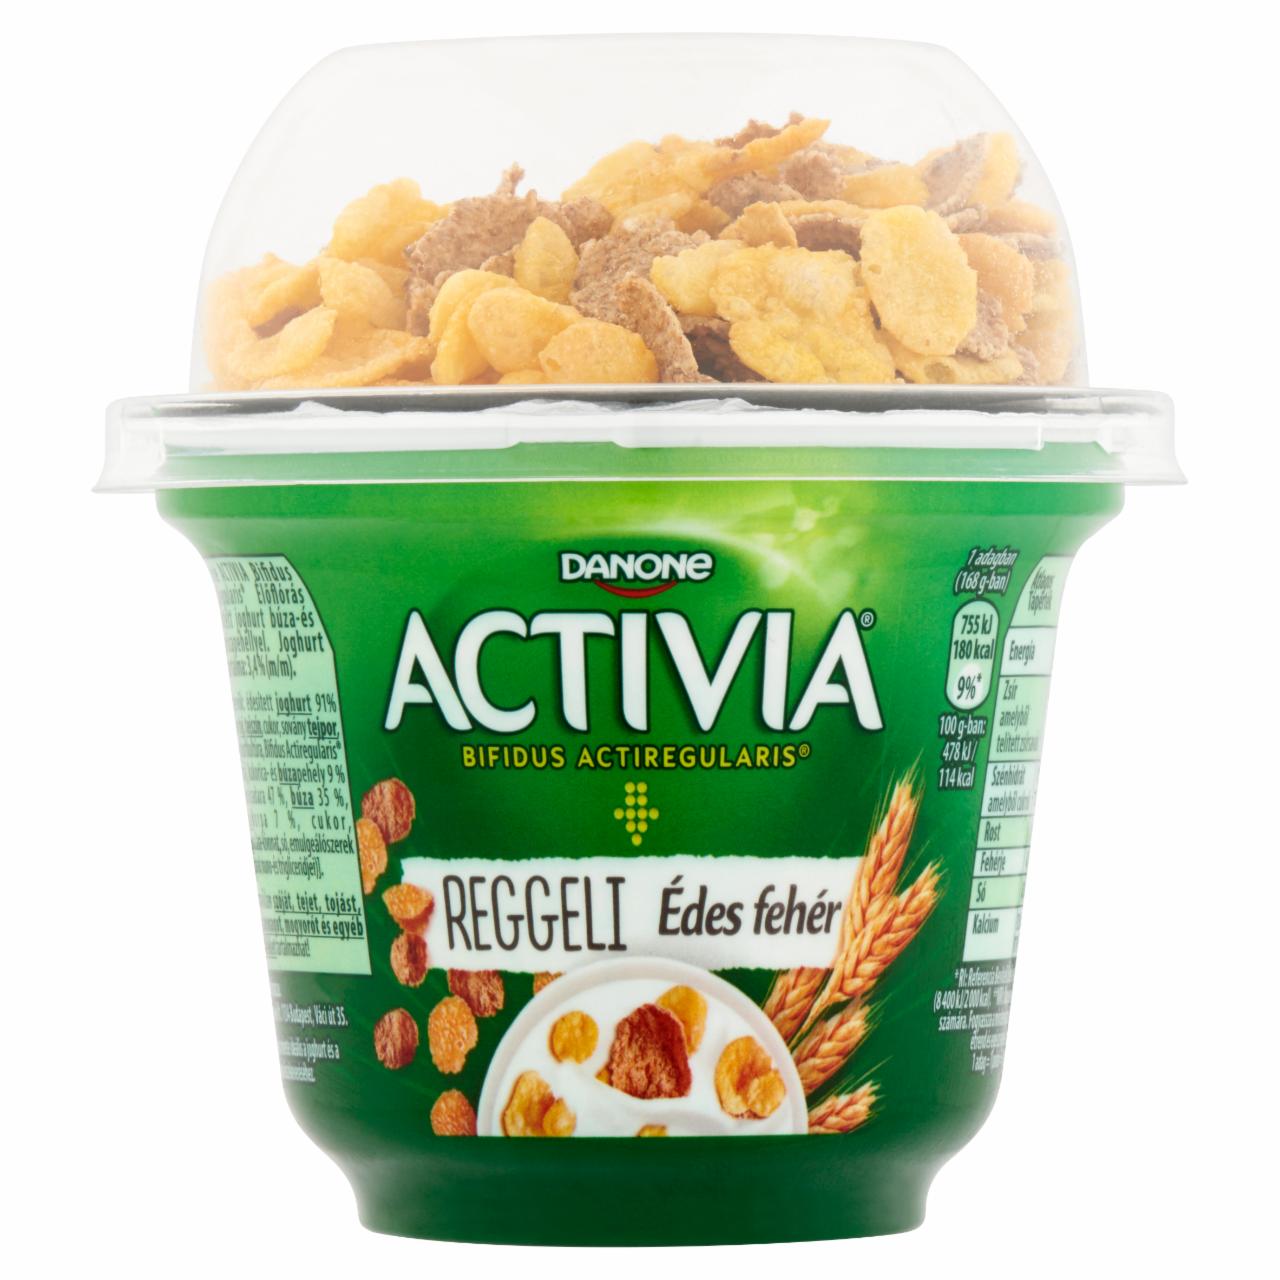 Képek - Danone Activia Reggeli élőflórás édesített joghurt búza- és kukoricapehellyel 168 g